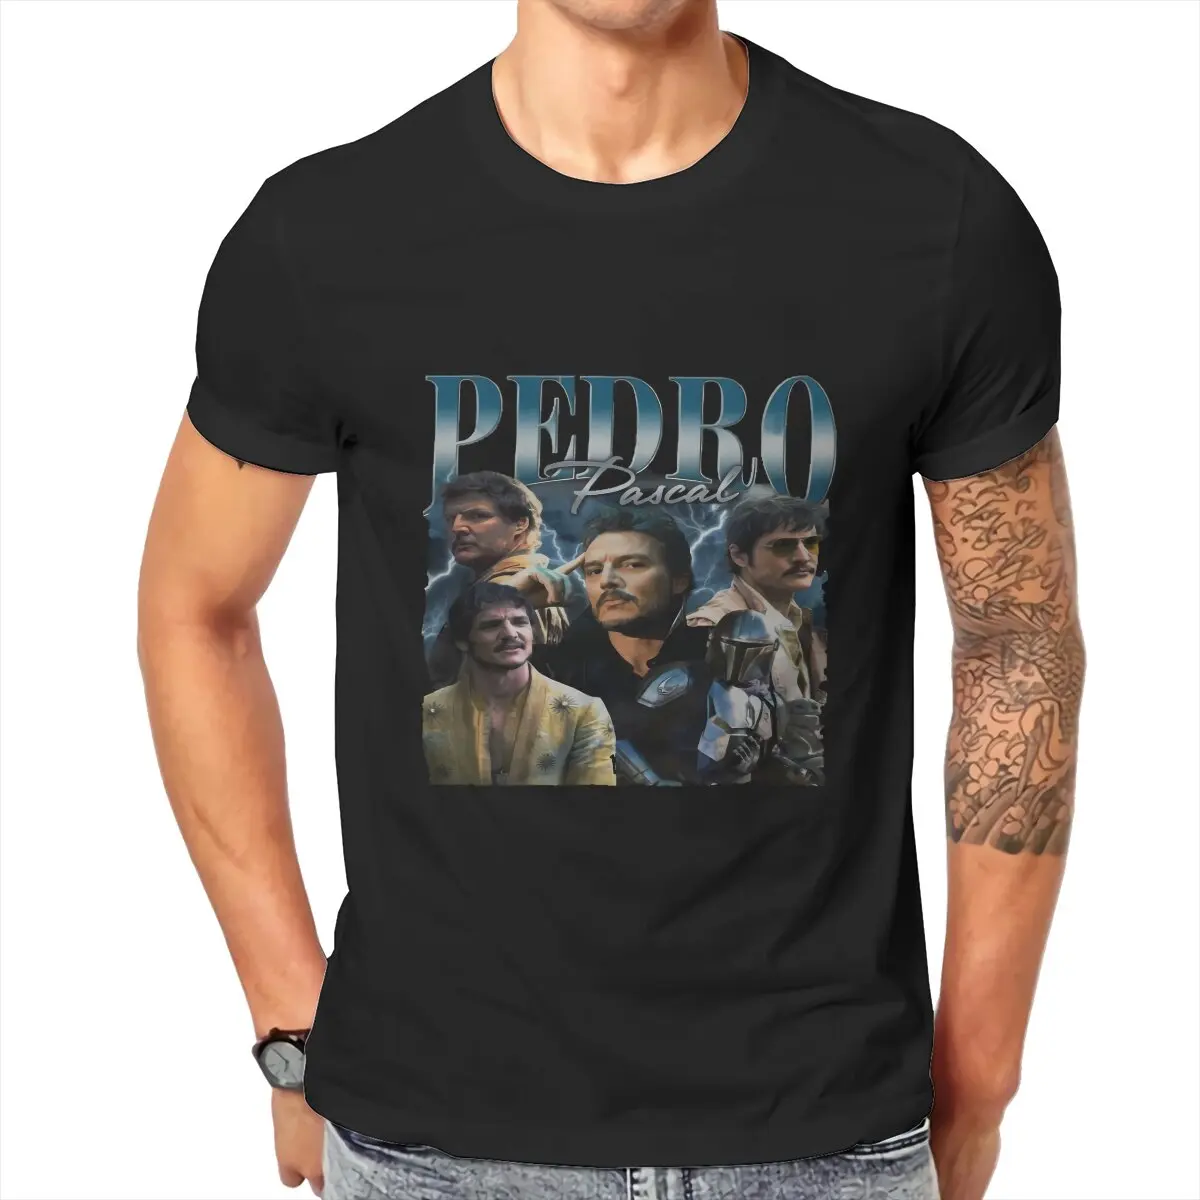 

Футболка Педро Паскаль для мужчин, простудный юмор, летние толстовки, футболка, новый дизайн, пушистая